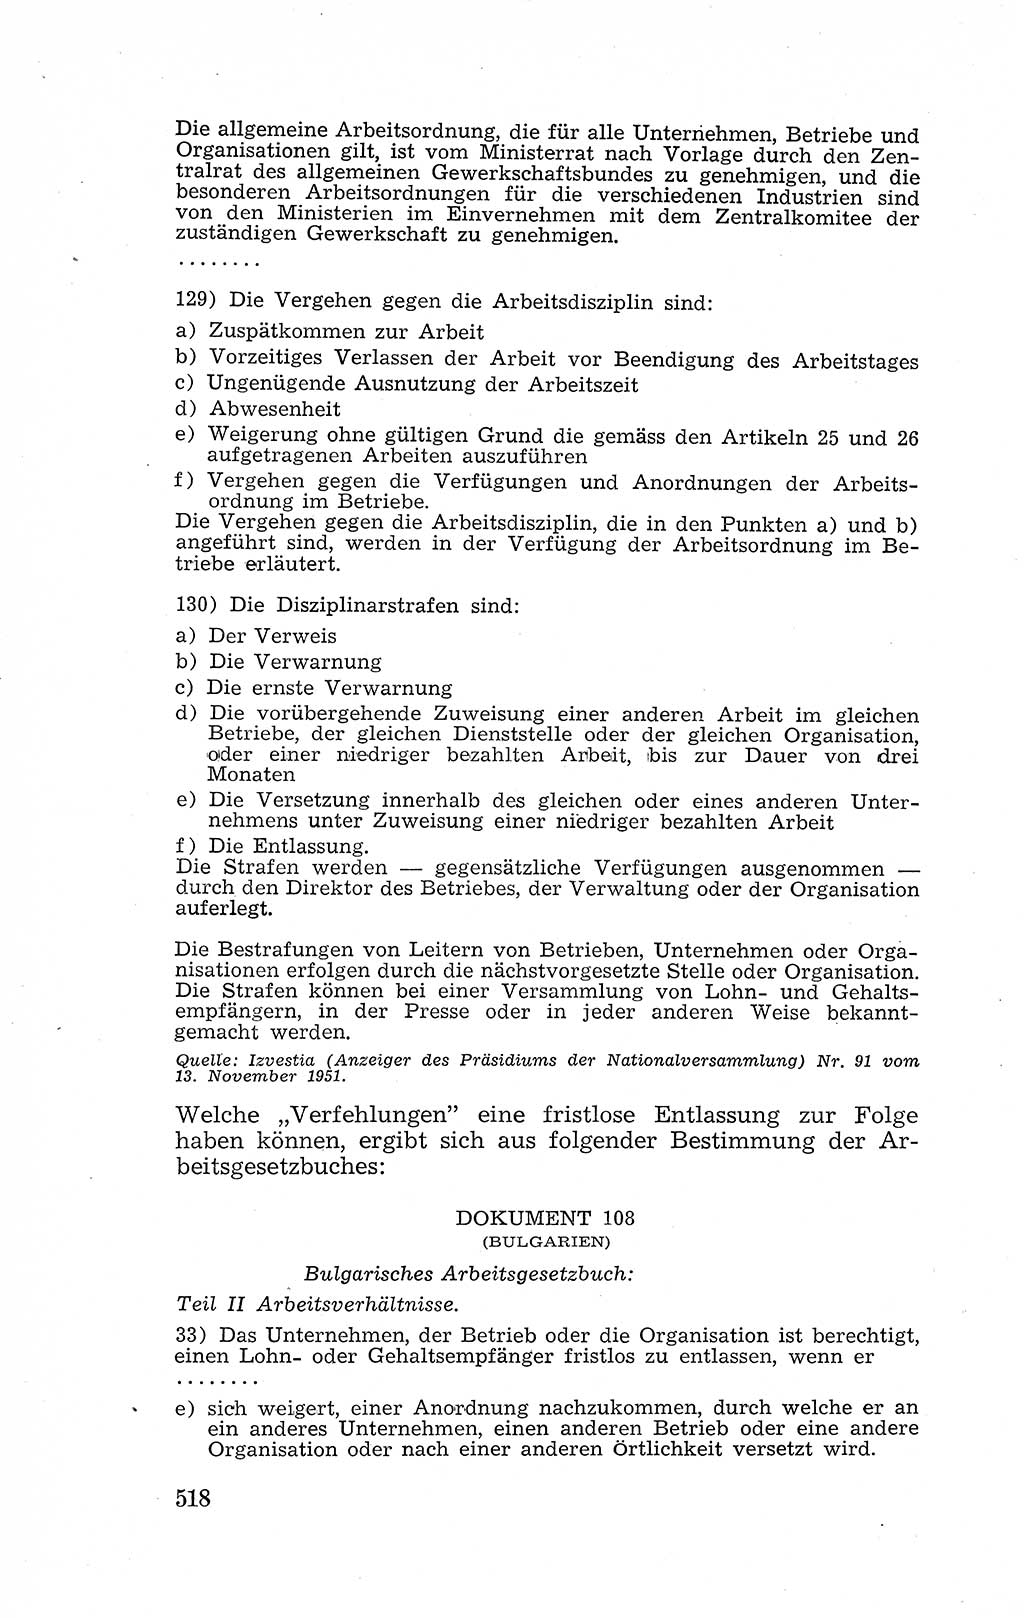 Recht in Fesseln, Dokumente, Internationale Juristen-Kommission [Bundesrepublik Deutschland (BRD)] 1955, Seite 518 (R. Dok. IJK BRD 1955, S. 518)